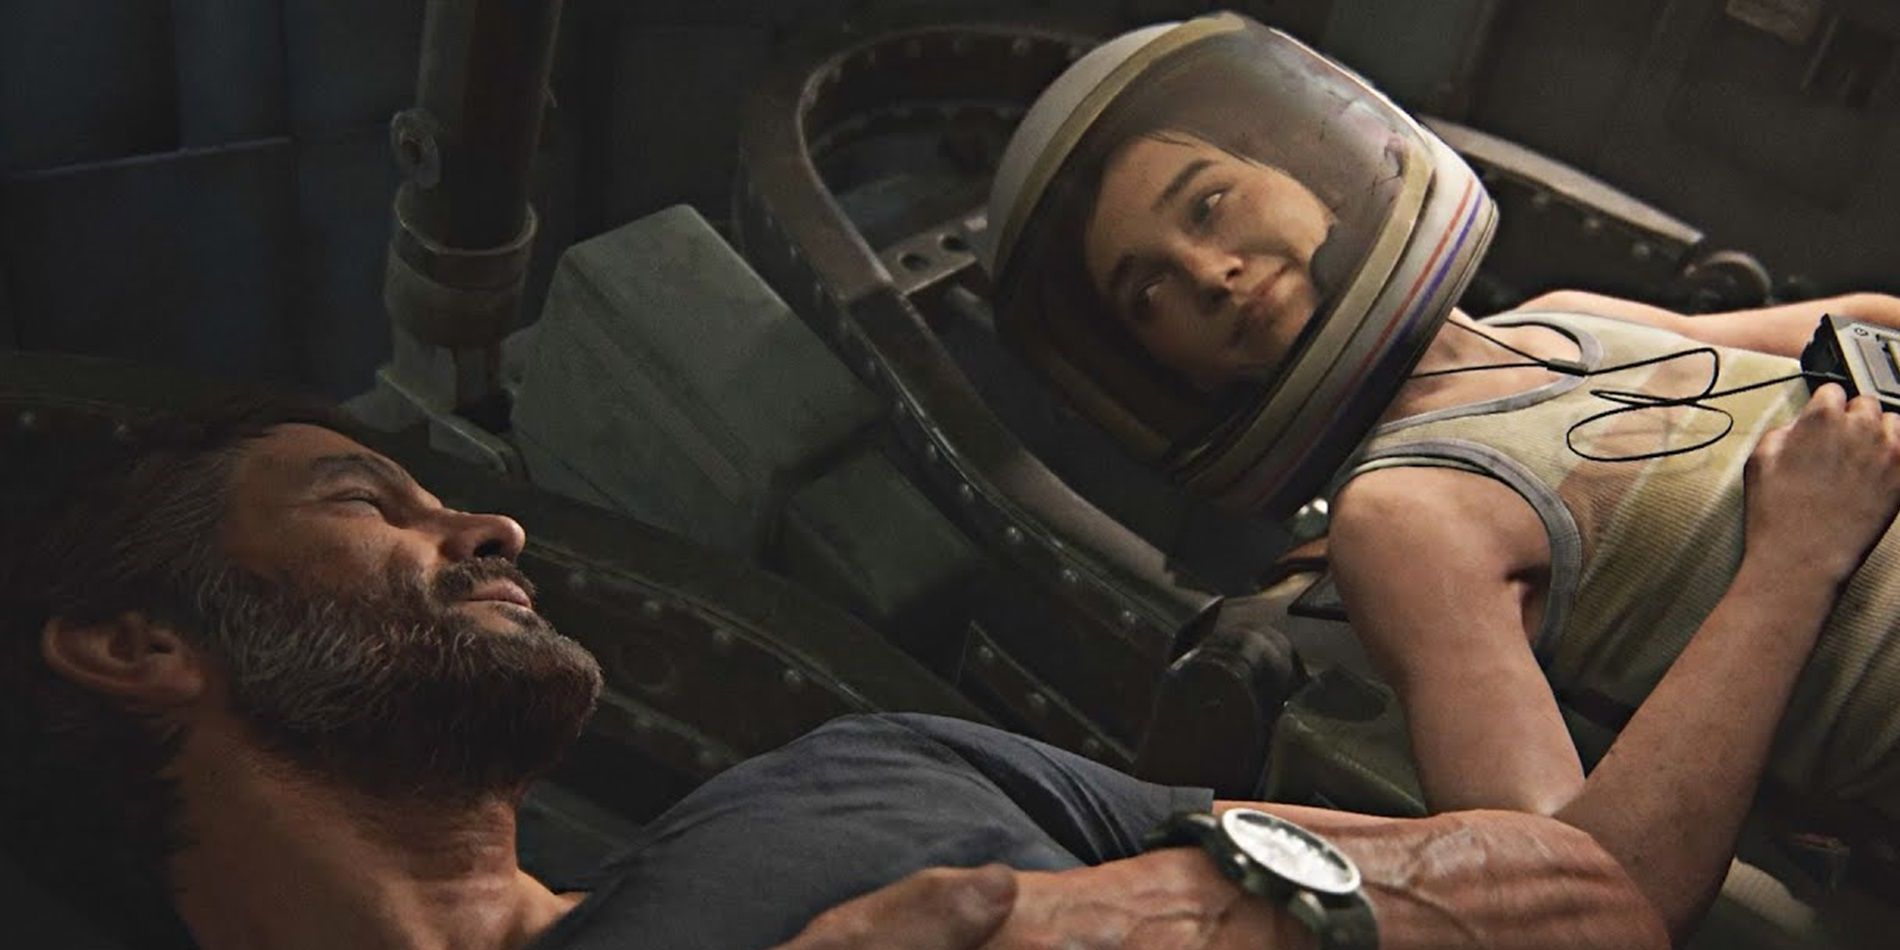 Joel e Ellie sentam-se em uma cápsula espacial em The Last of Us Part II